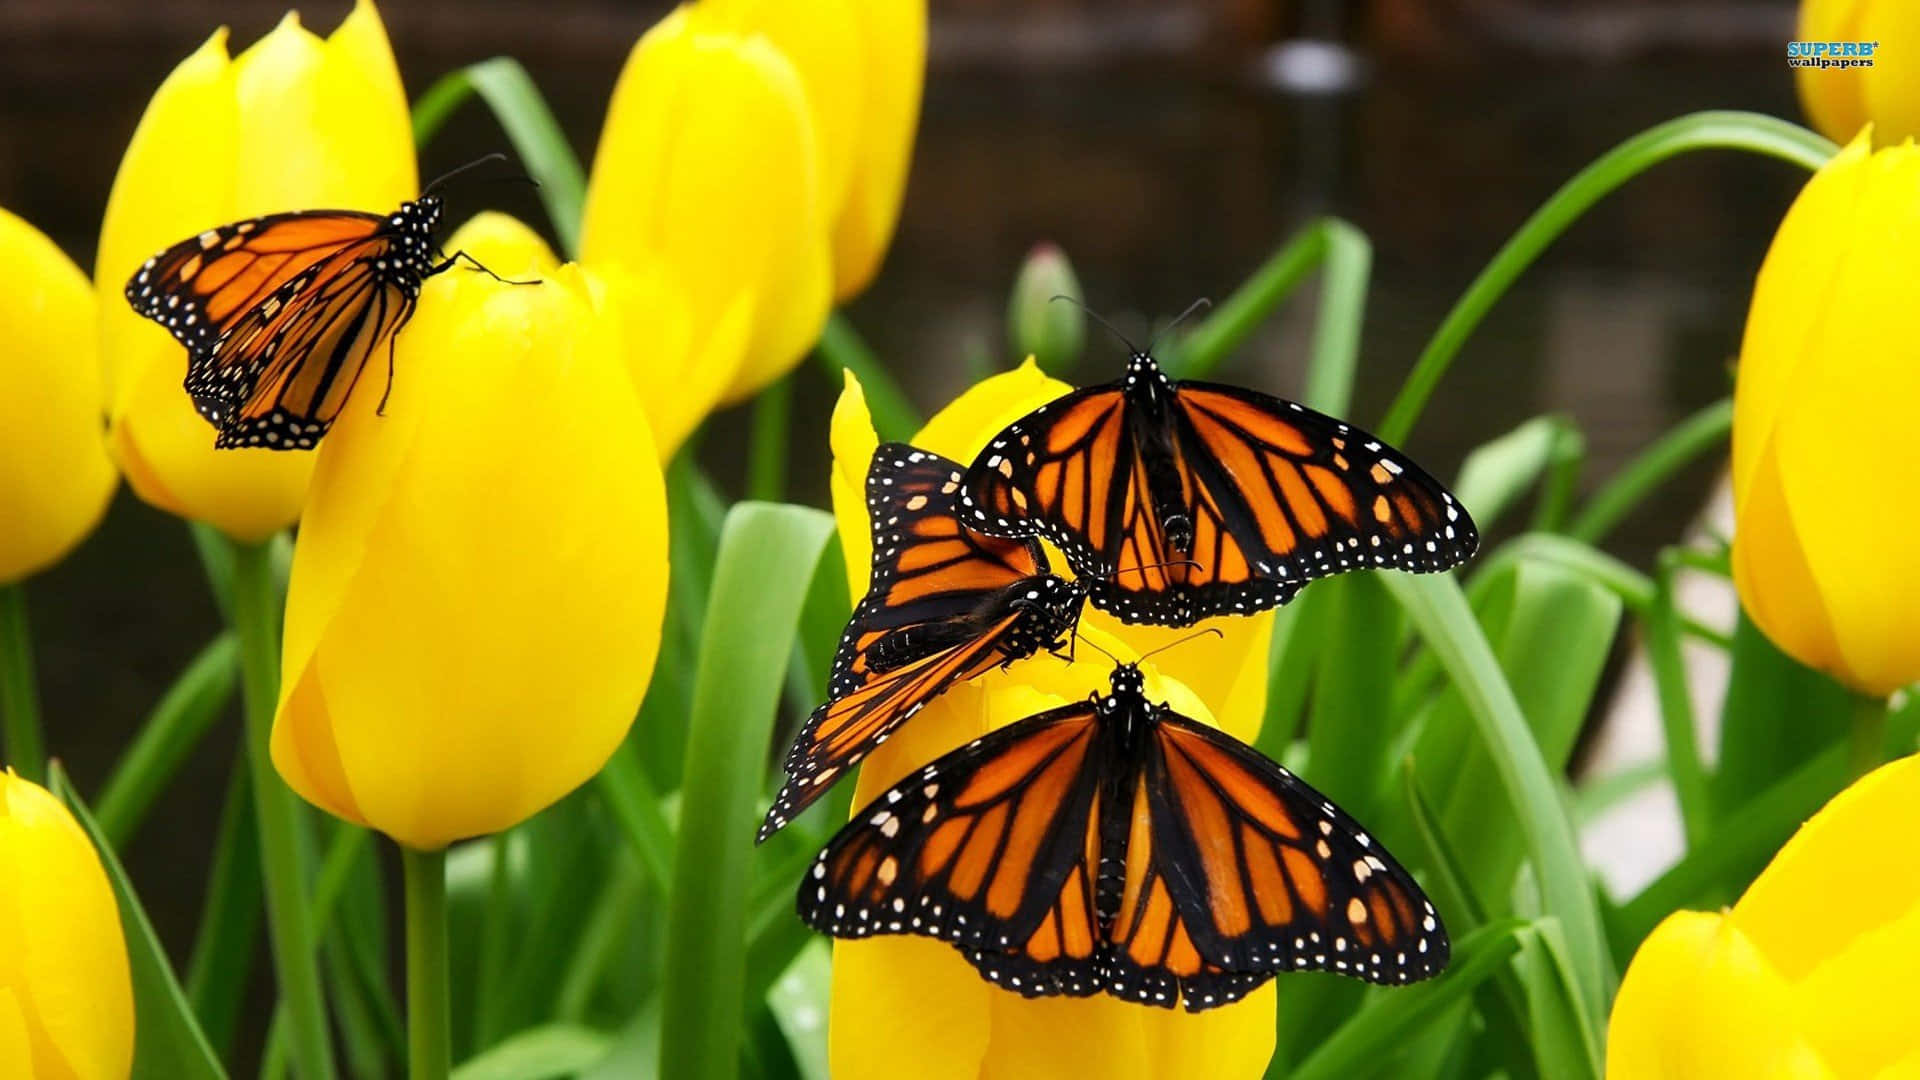 Majestic Monarch Butterfly in Flight